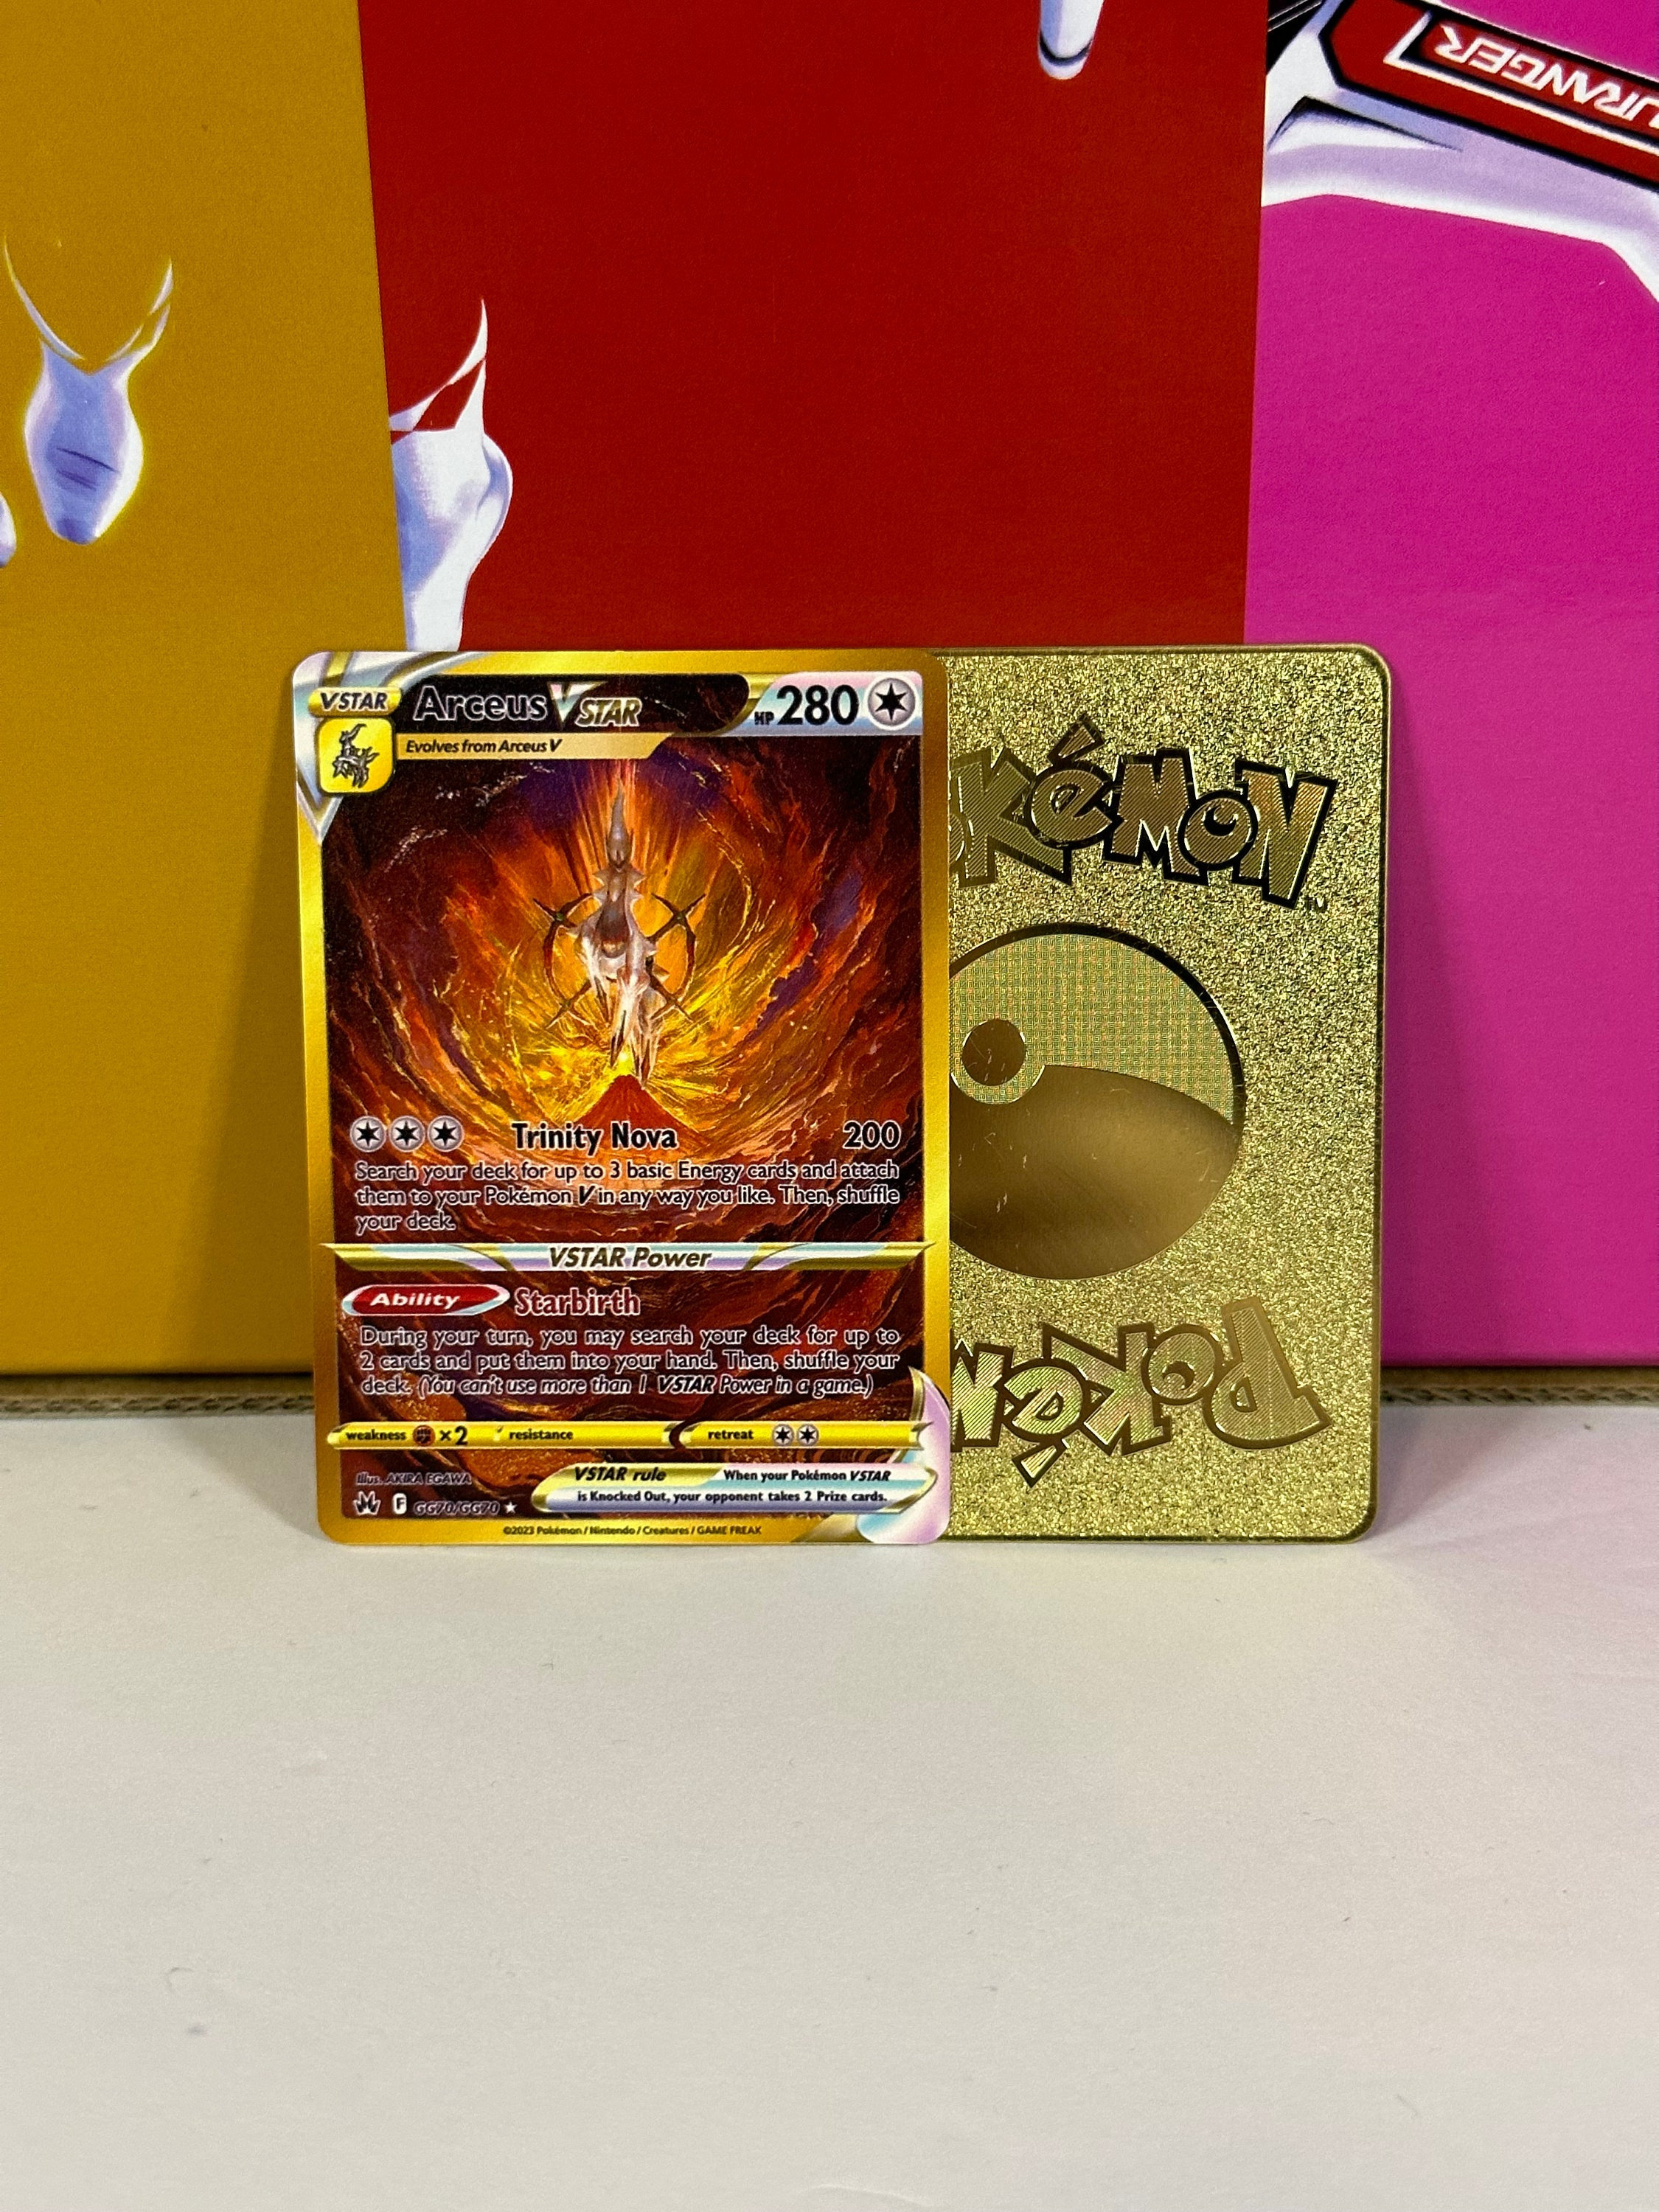 Golden Arceus Pokemon Card, Arceus Pokemon Card V Star